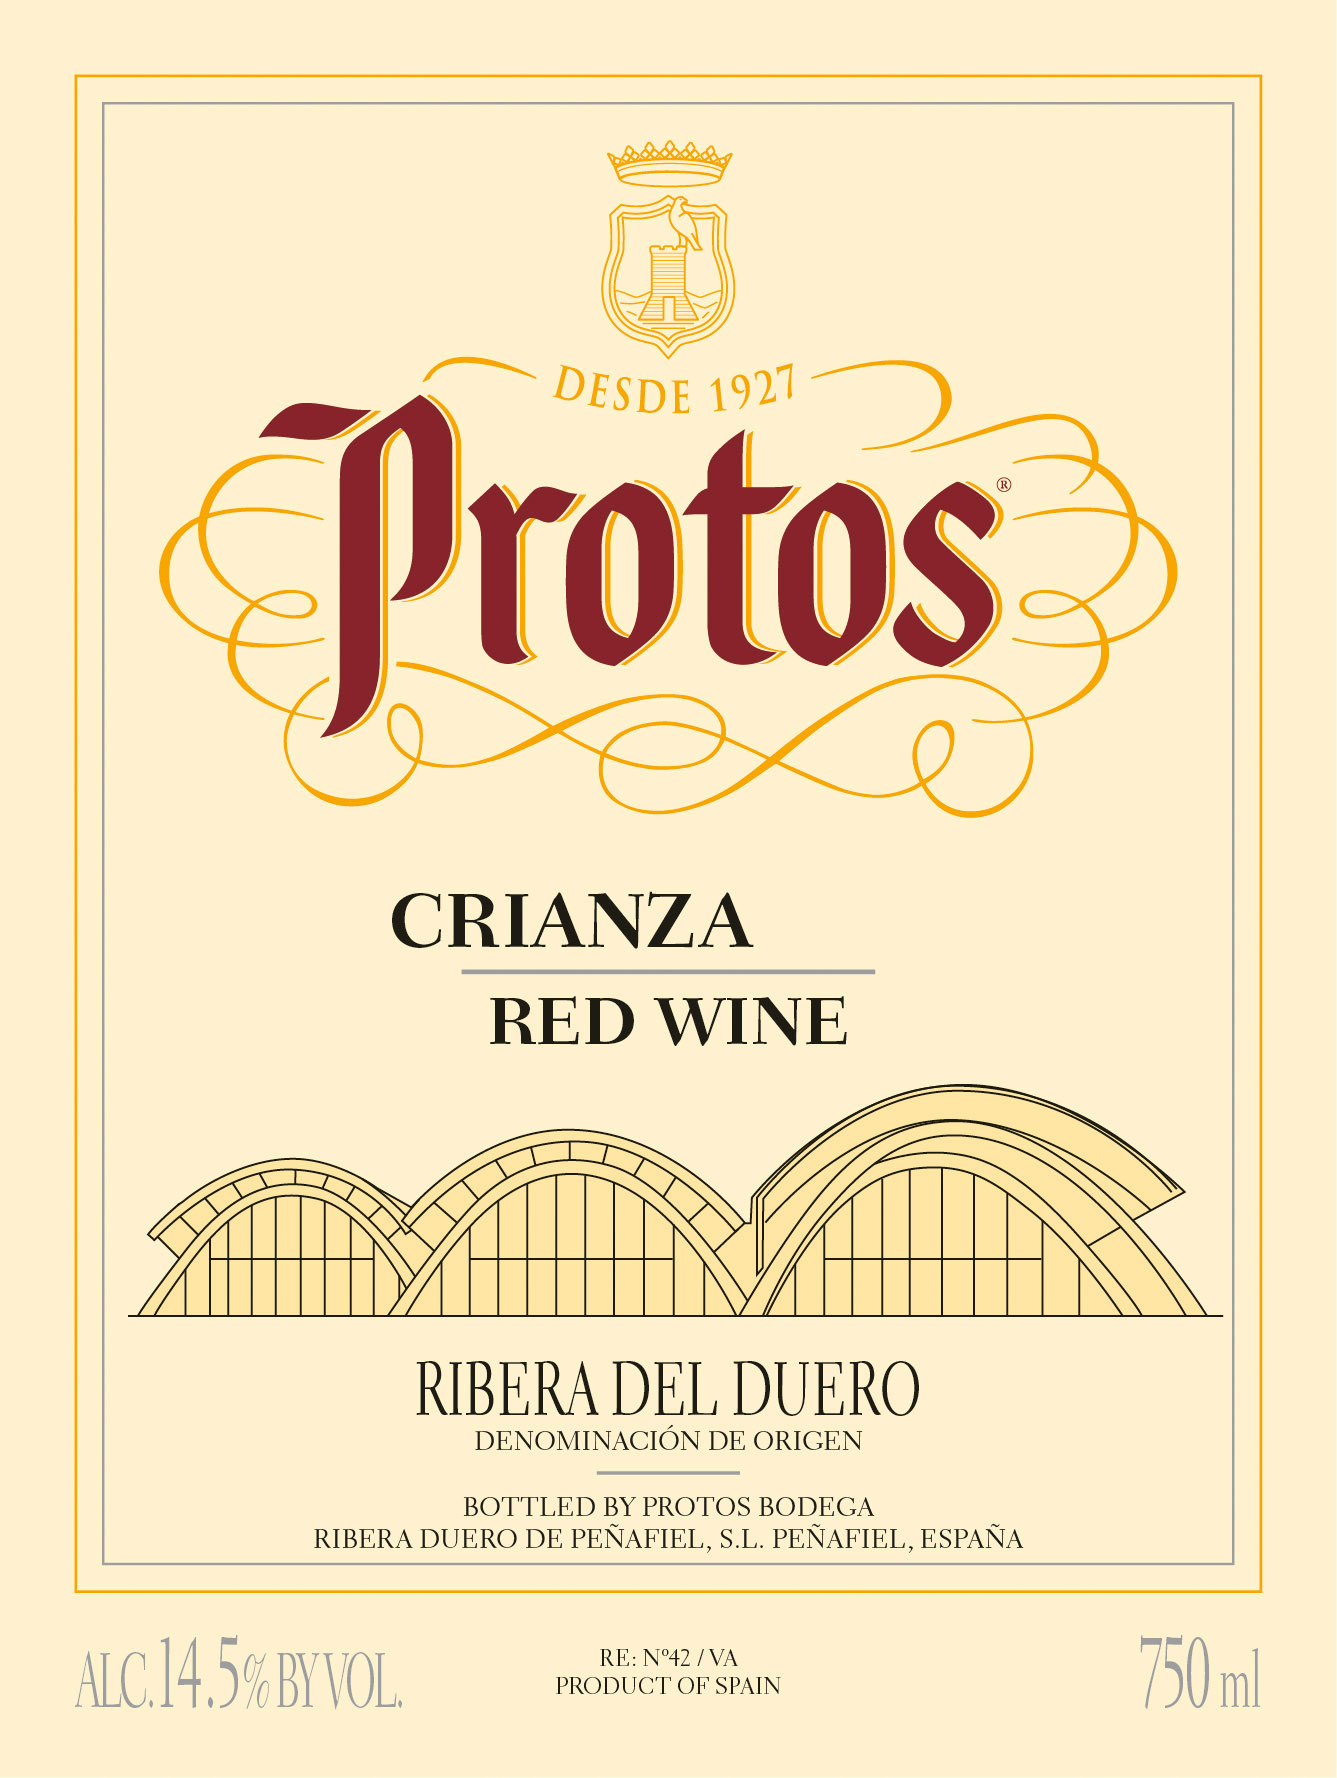 Protos - Crianza label